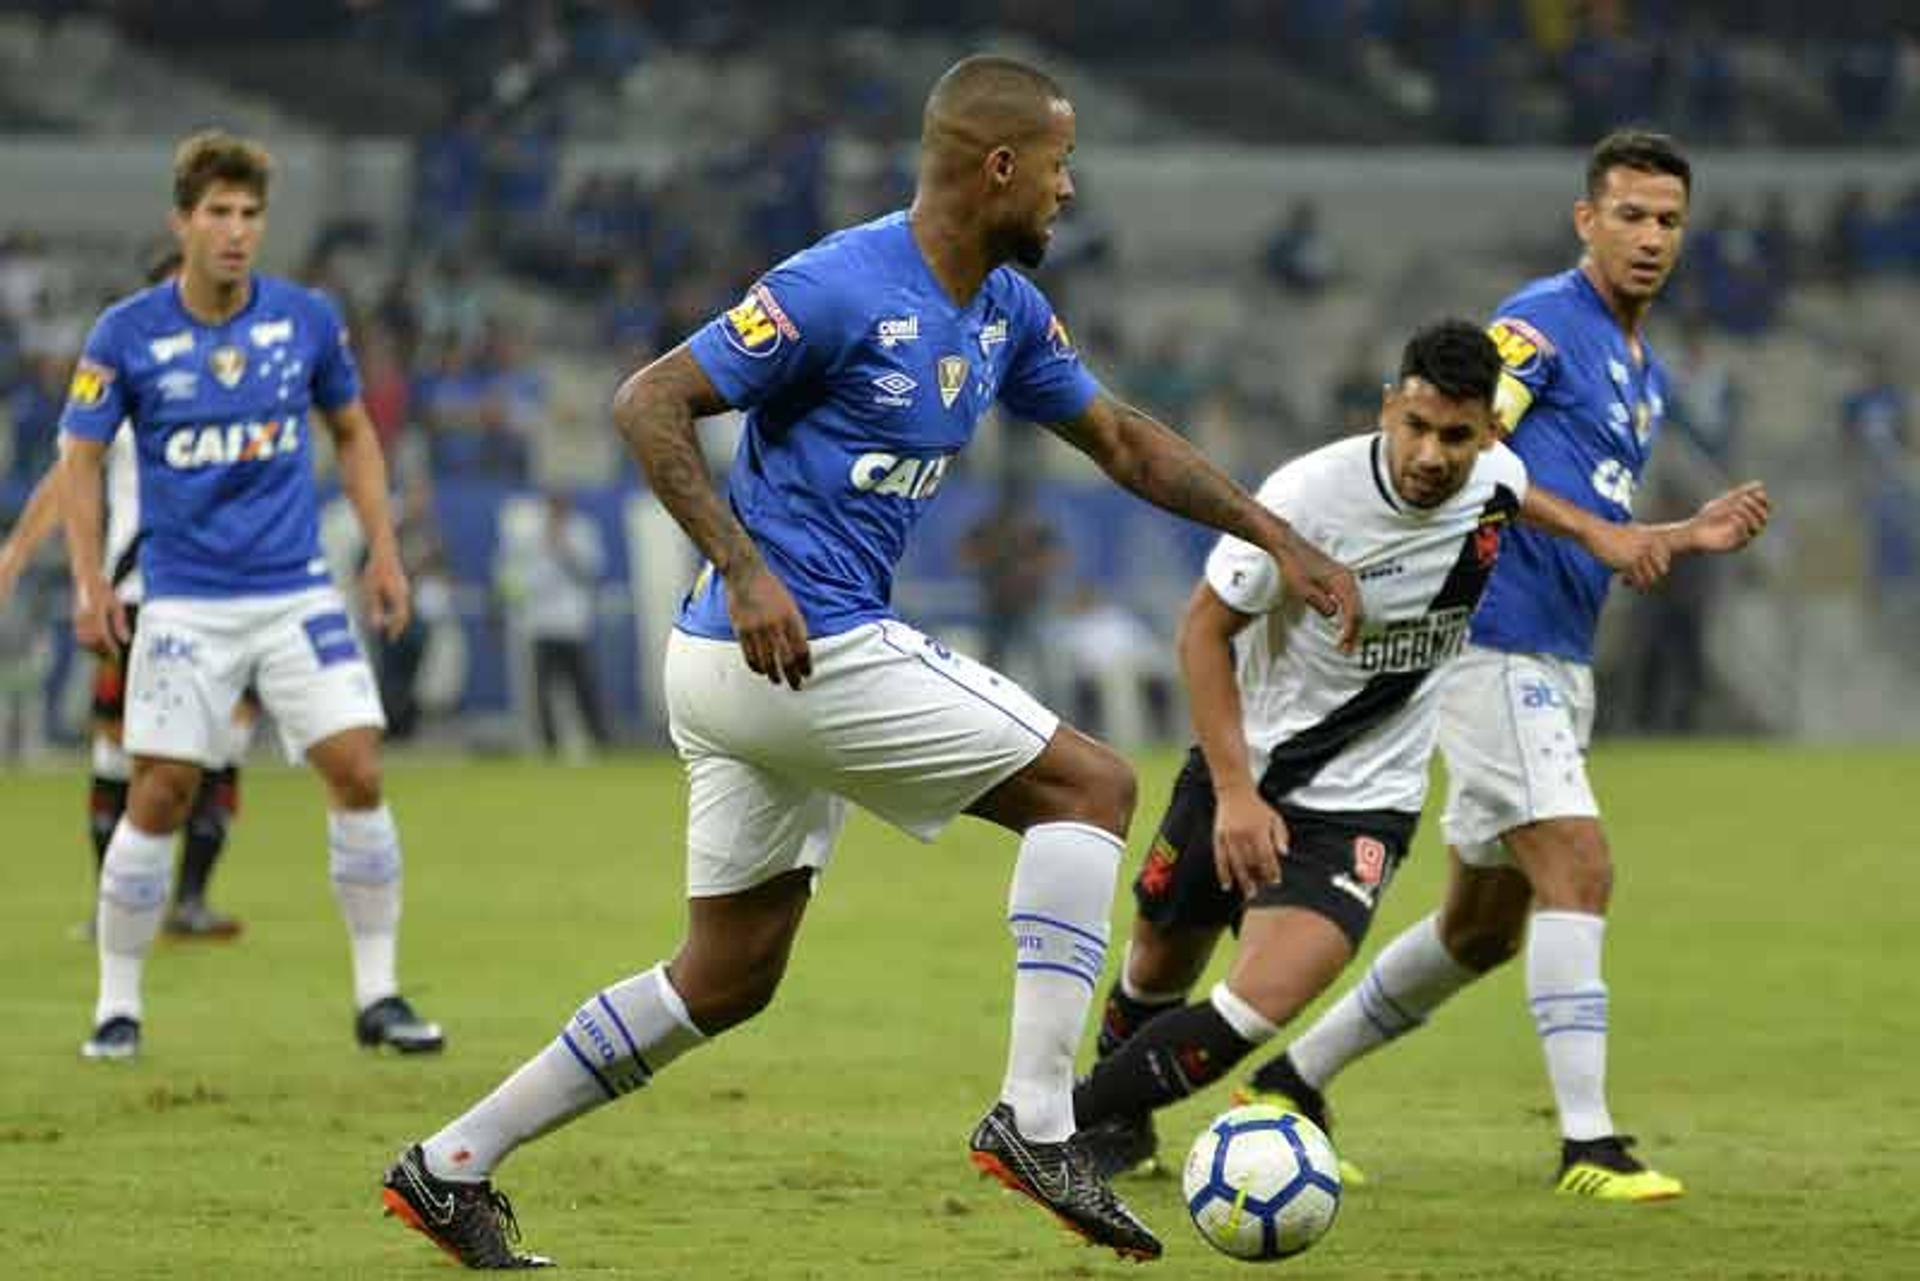 O Cruzeiro ficou no empate com o Vasco nesta quarta-feira, no Mineirão, pelo Campeonato Brasileiro. No entanto, apesar do empate, o zagueiro do Dedé teve grande atuação e recebeu a maior nota da equipe mineira. Confira! (Por João Mércio Gomes)